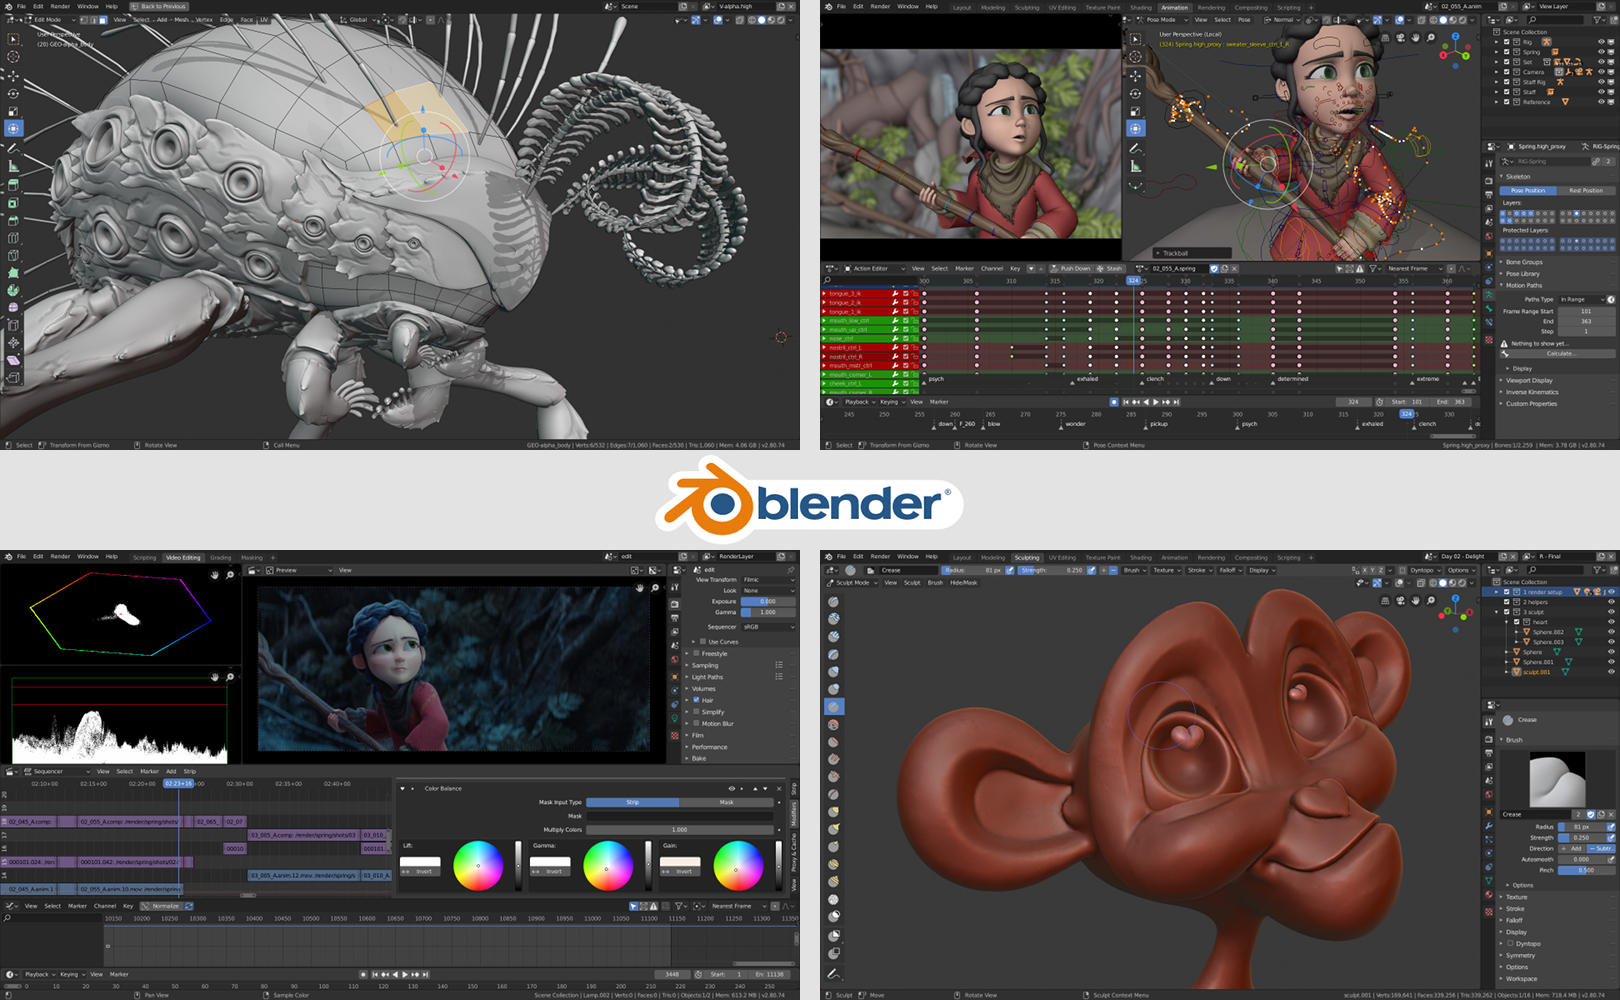 blender-2-90-darmowy-program-do-grafiki-renderingu-i-animacji-pobierz